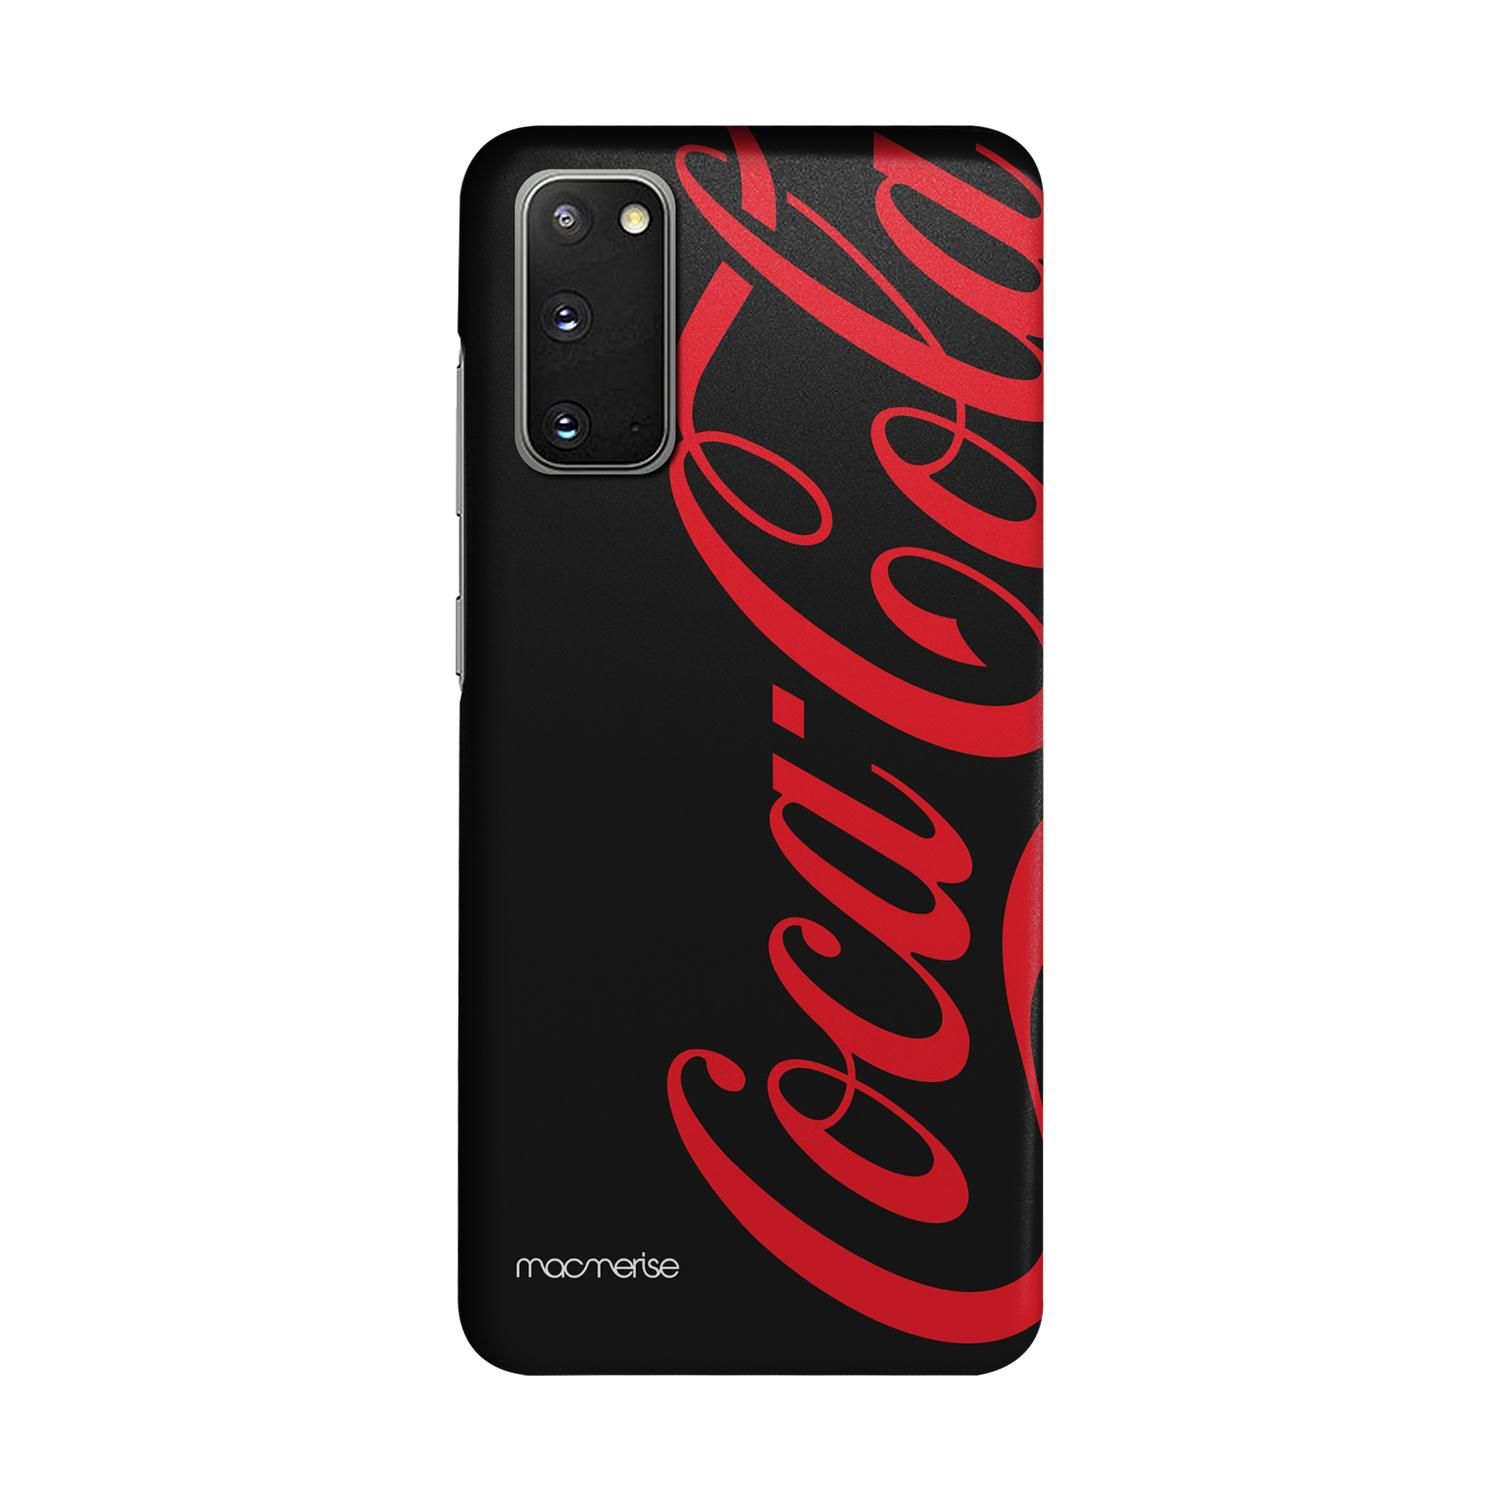 Buy Coke Black Red - Sleek Phone Case for Samsung S20 Online